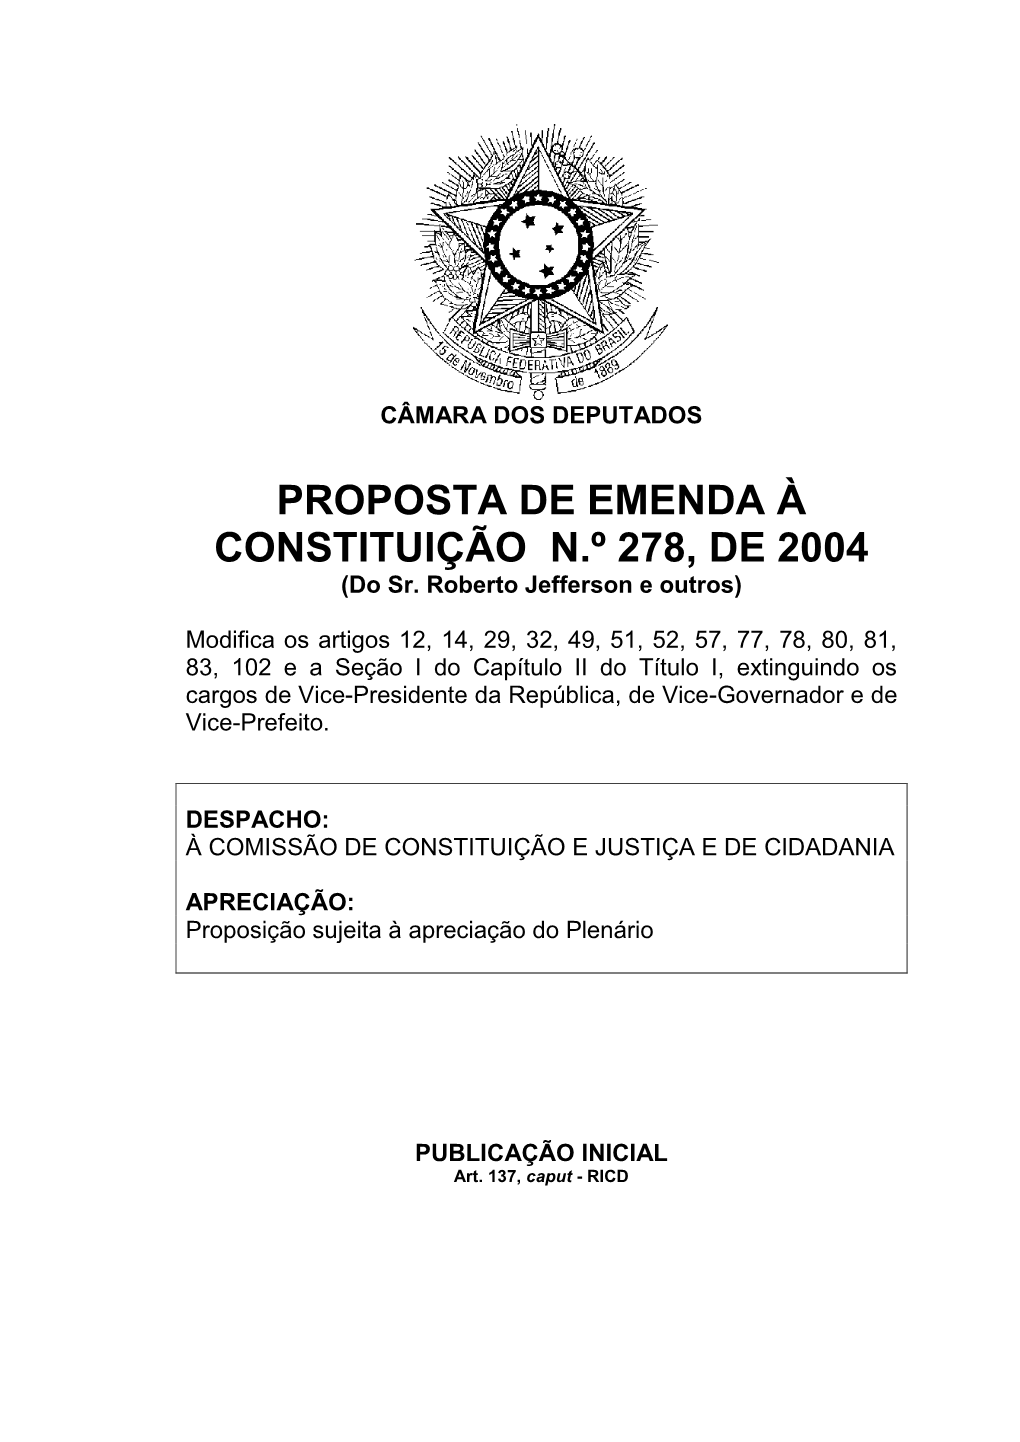 PROPOSTA DE EMENDA À CONSTITUIÇÃO N.º 278, DE 2004 (Do Sr